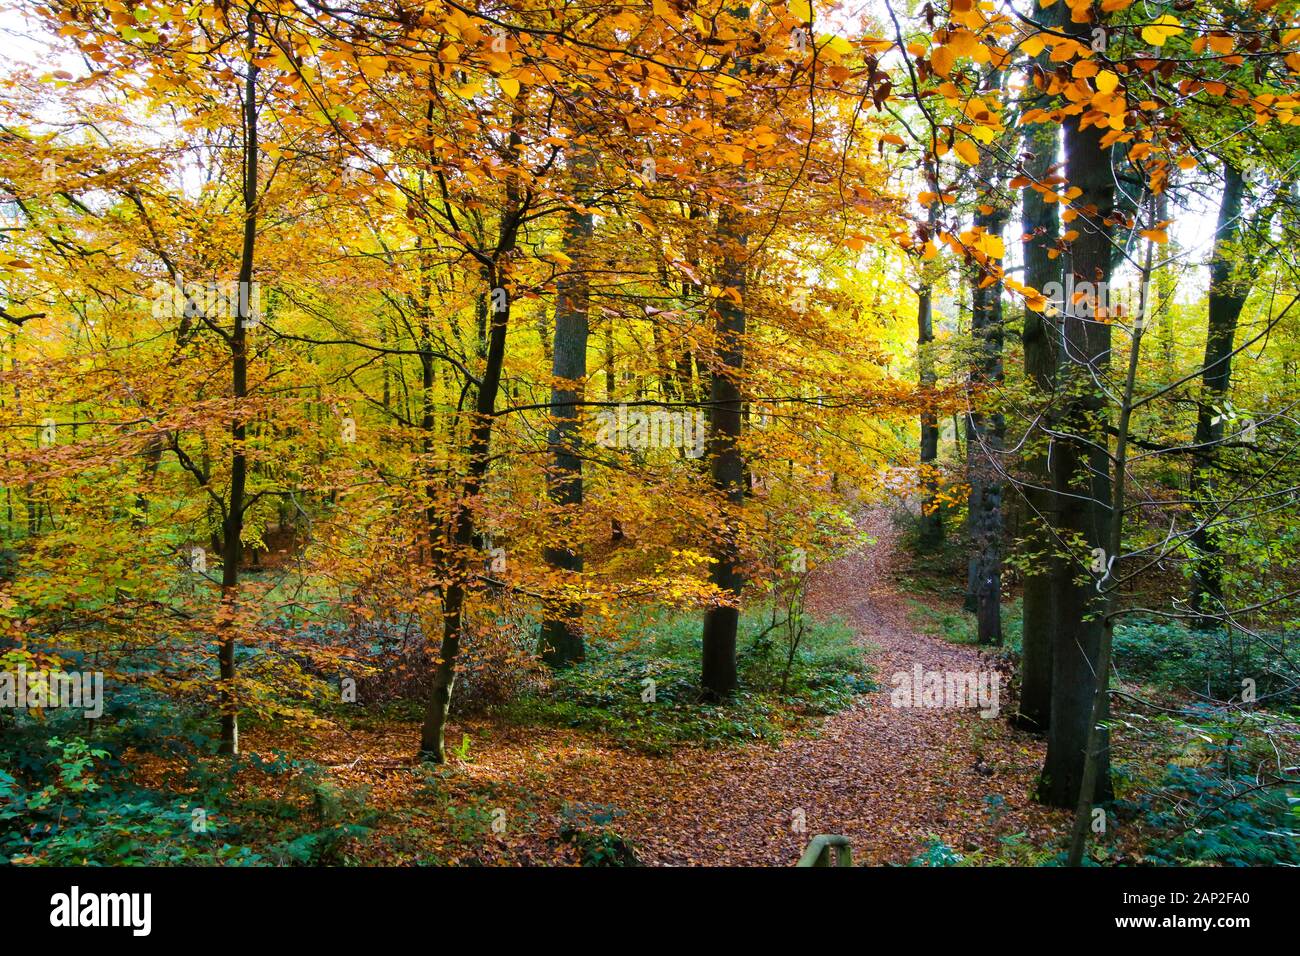 Vue sur chemin couvert de feuillage en allemand forêt de hêtres en automne couleurs - Viersen (Suechteln), Allemagne Banque D'Images